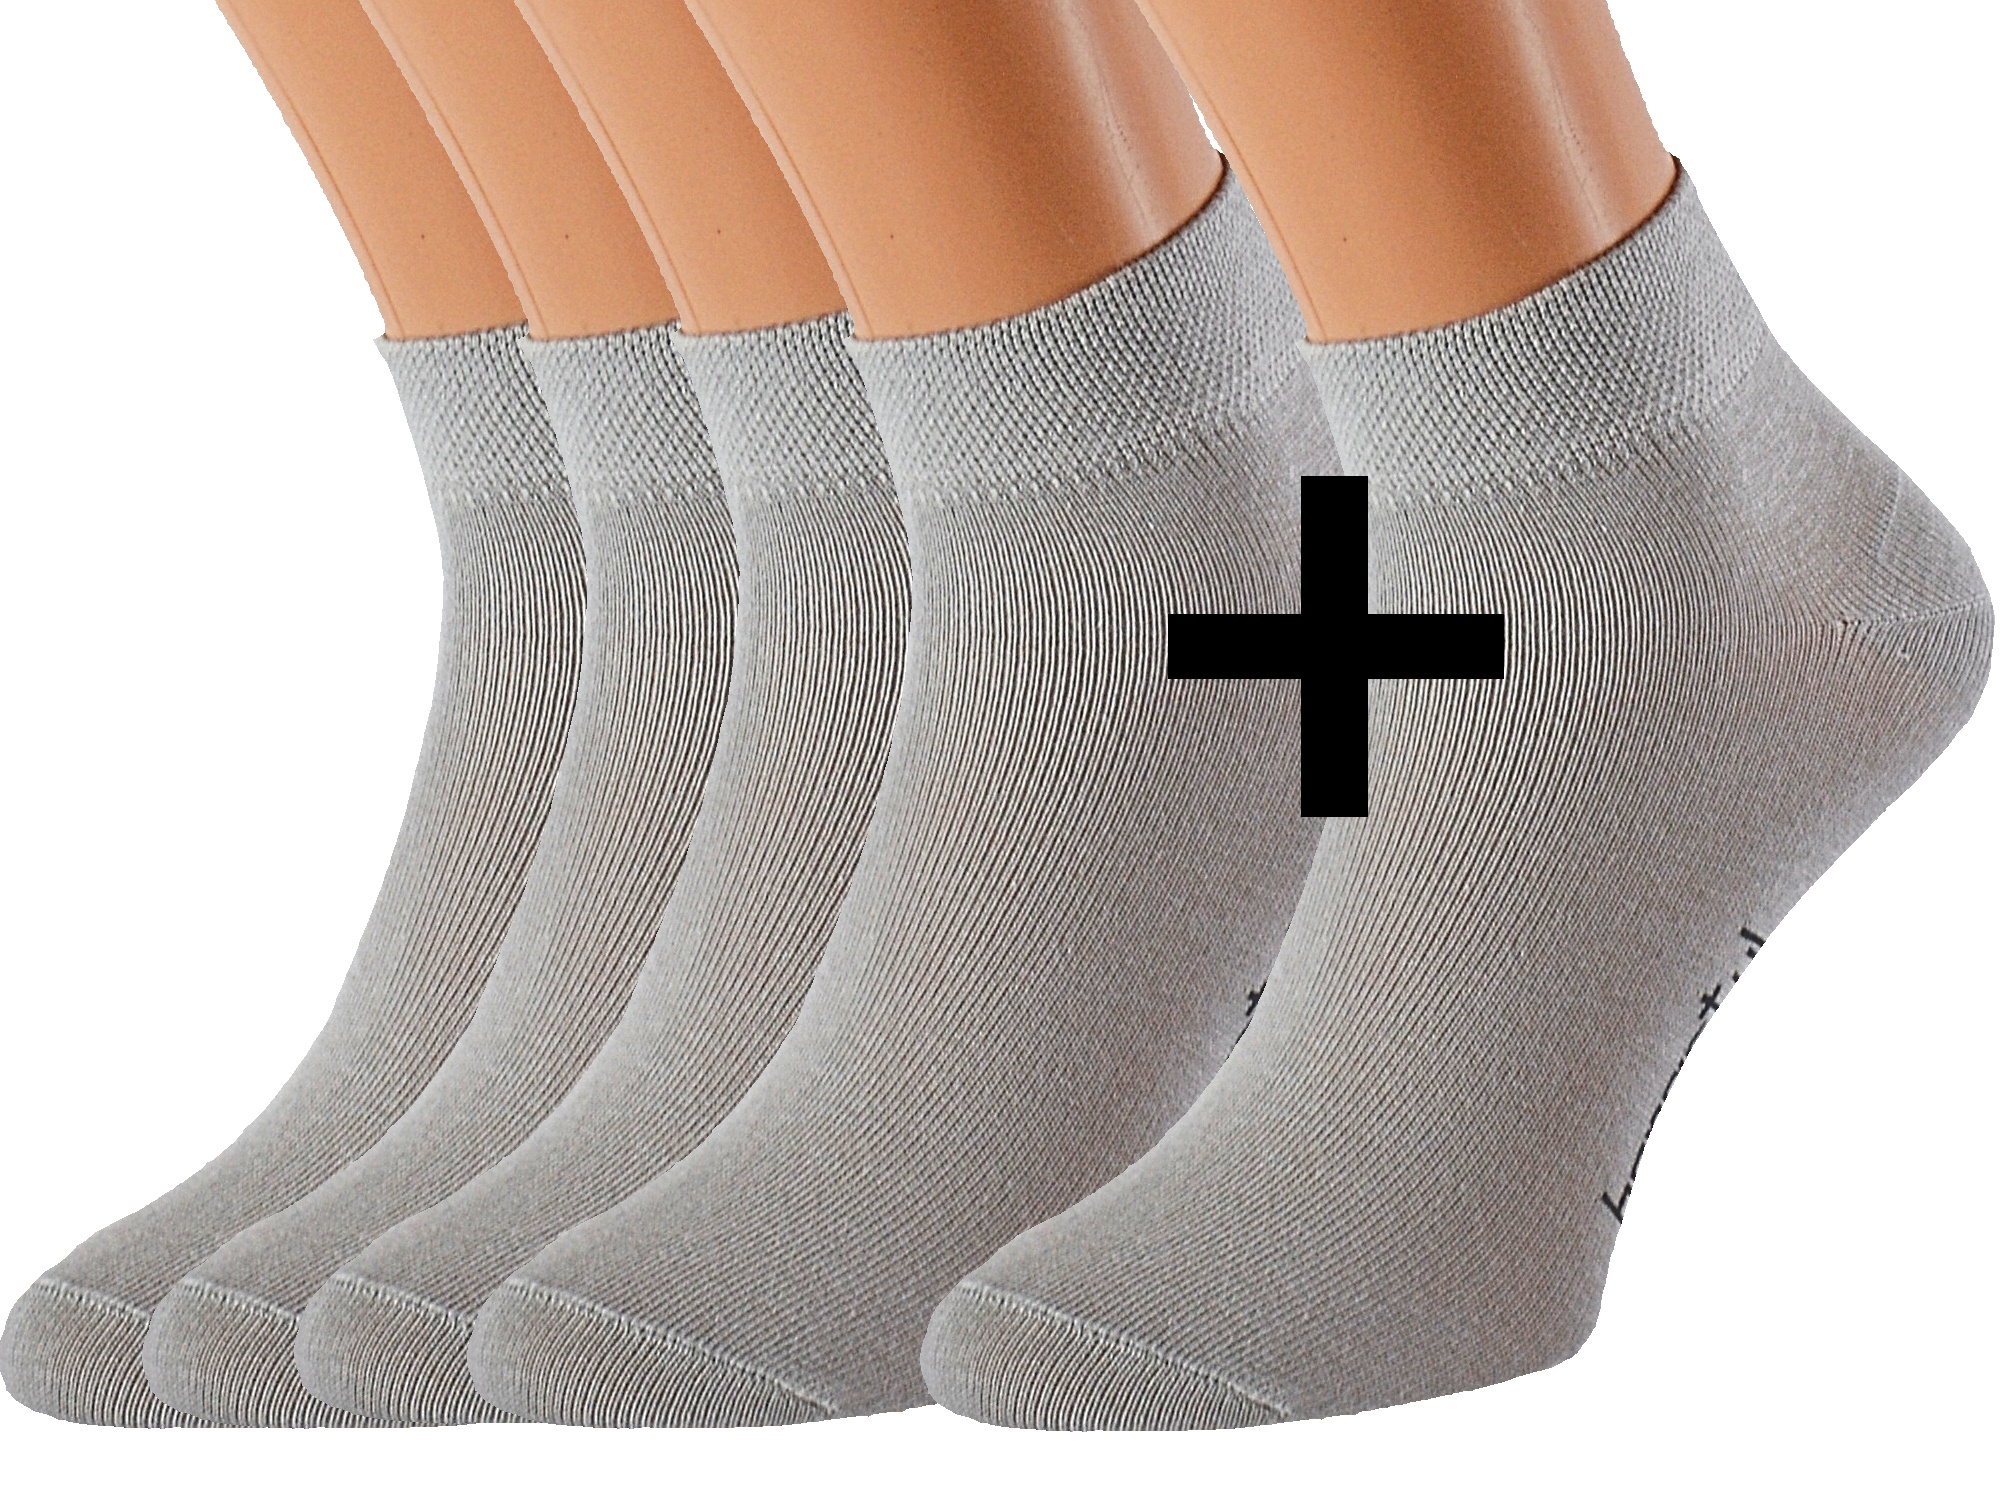 Bavlněné ponožky OBI 5 párů KUKS Barva: Světle šedé, Velikost: EUR 43-46 (UK 9-11)